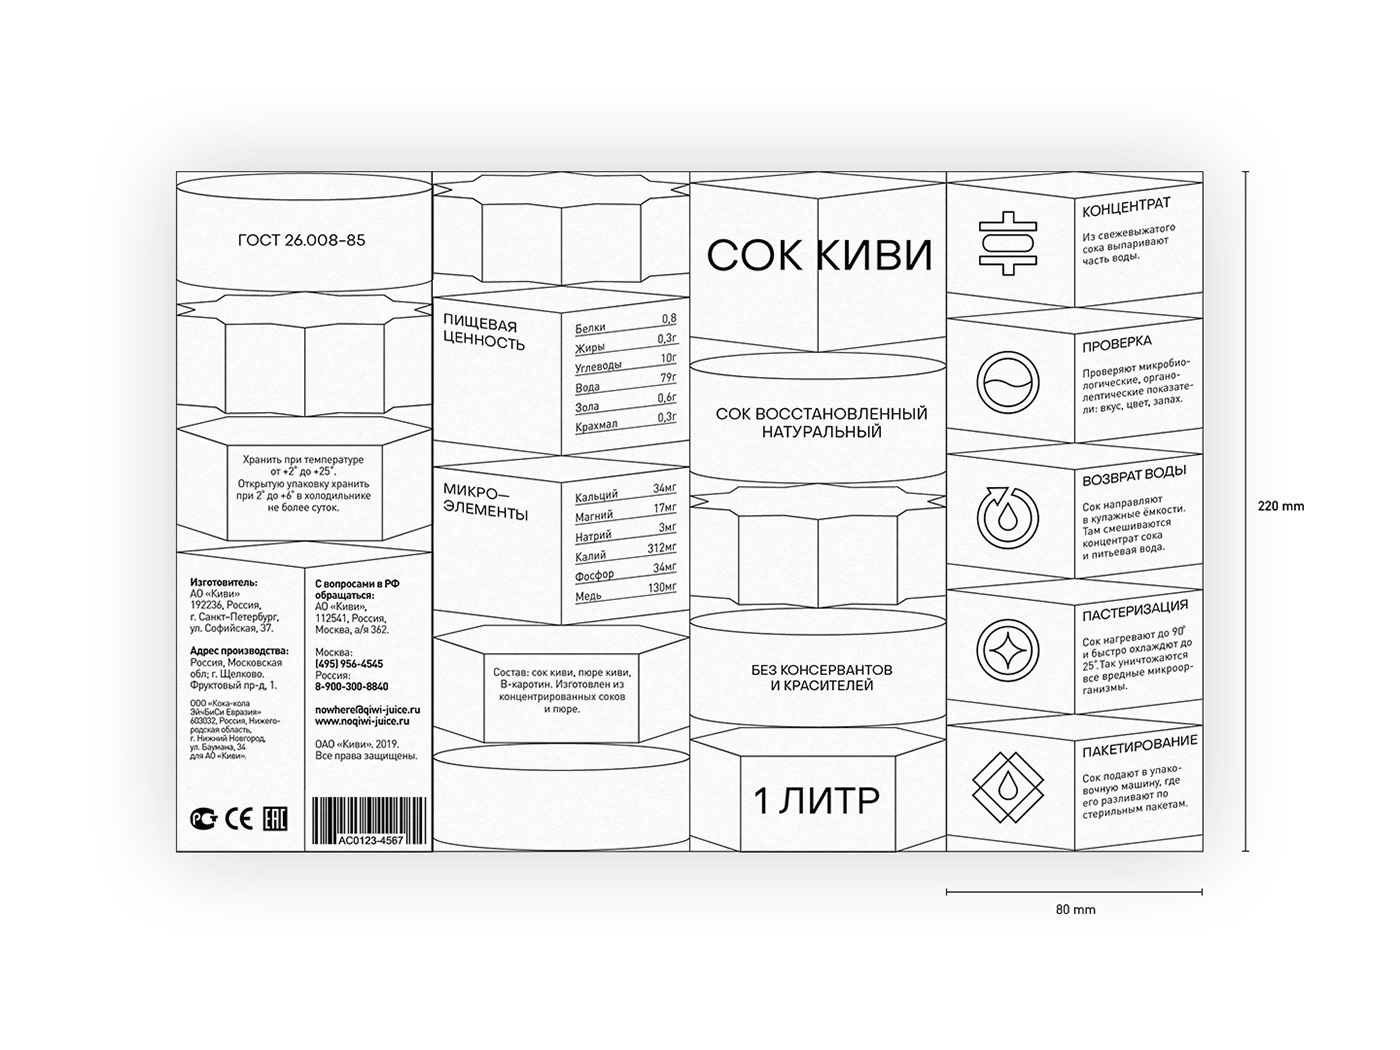 Packaging design graphic design  typography   package design  renderer Art Director digital printing design